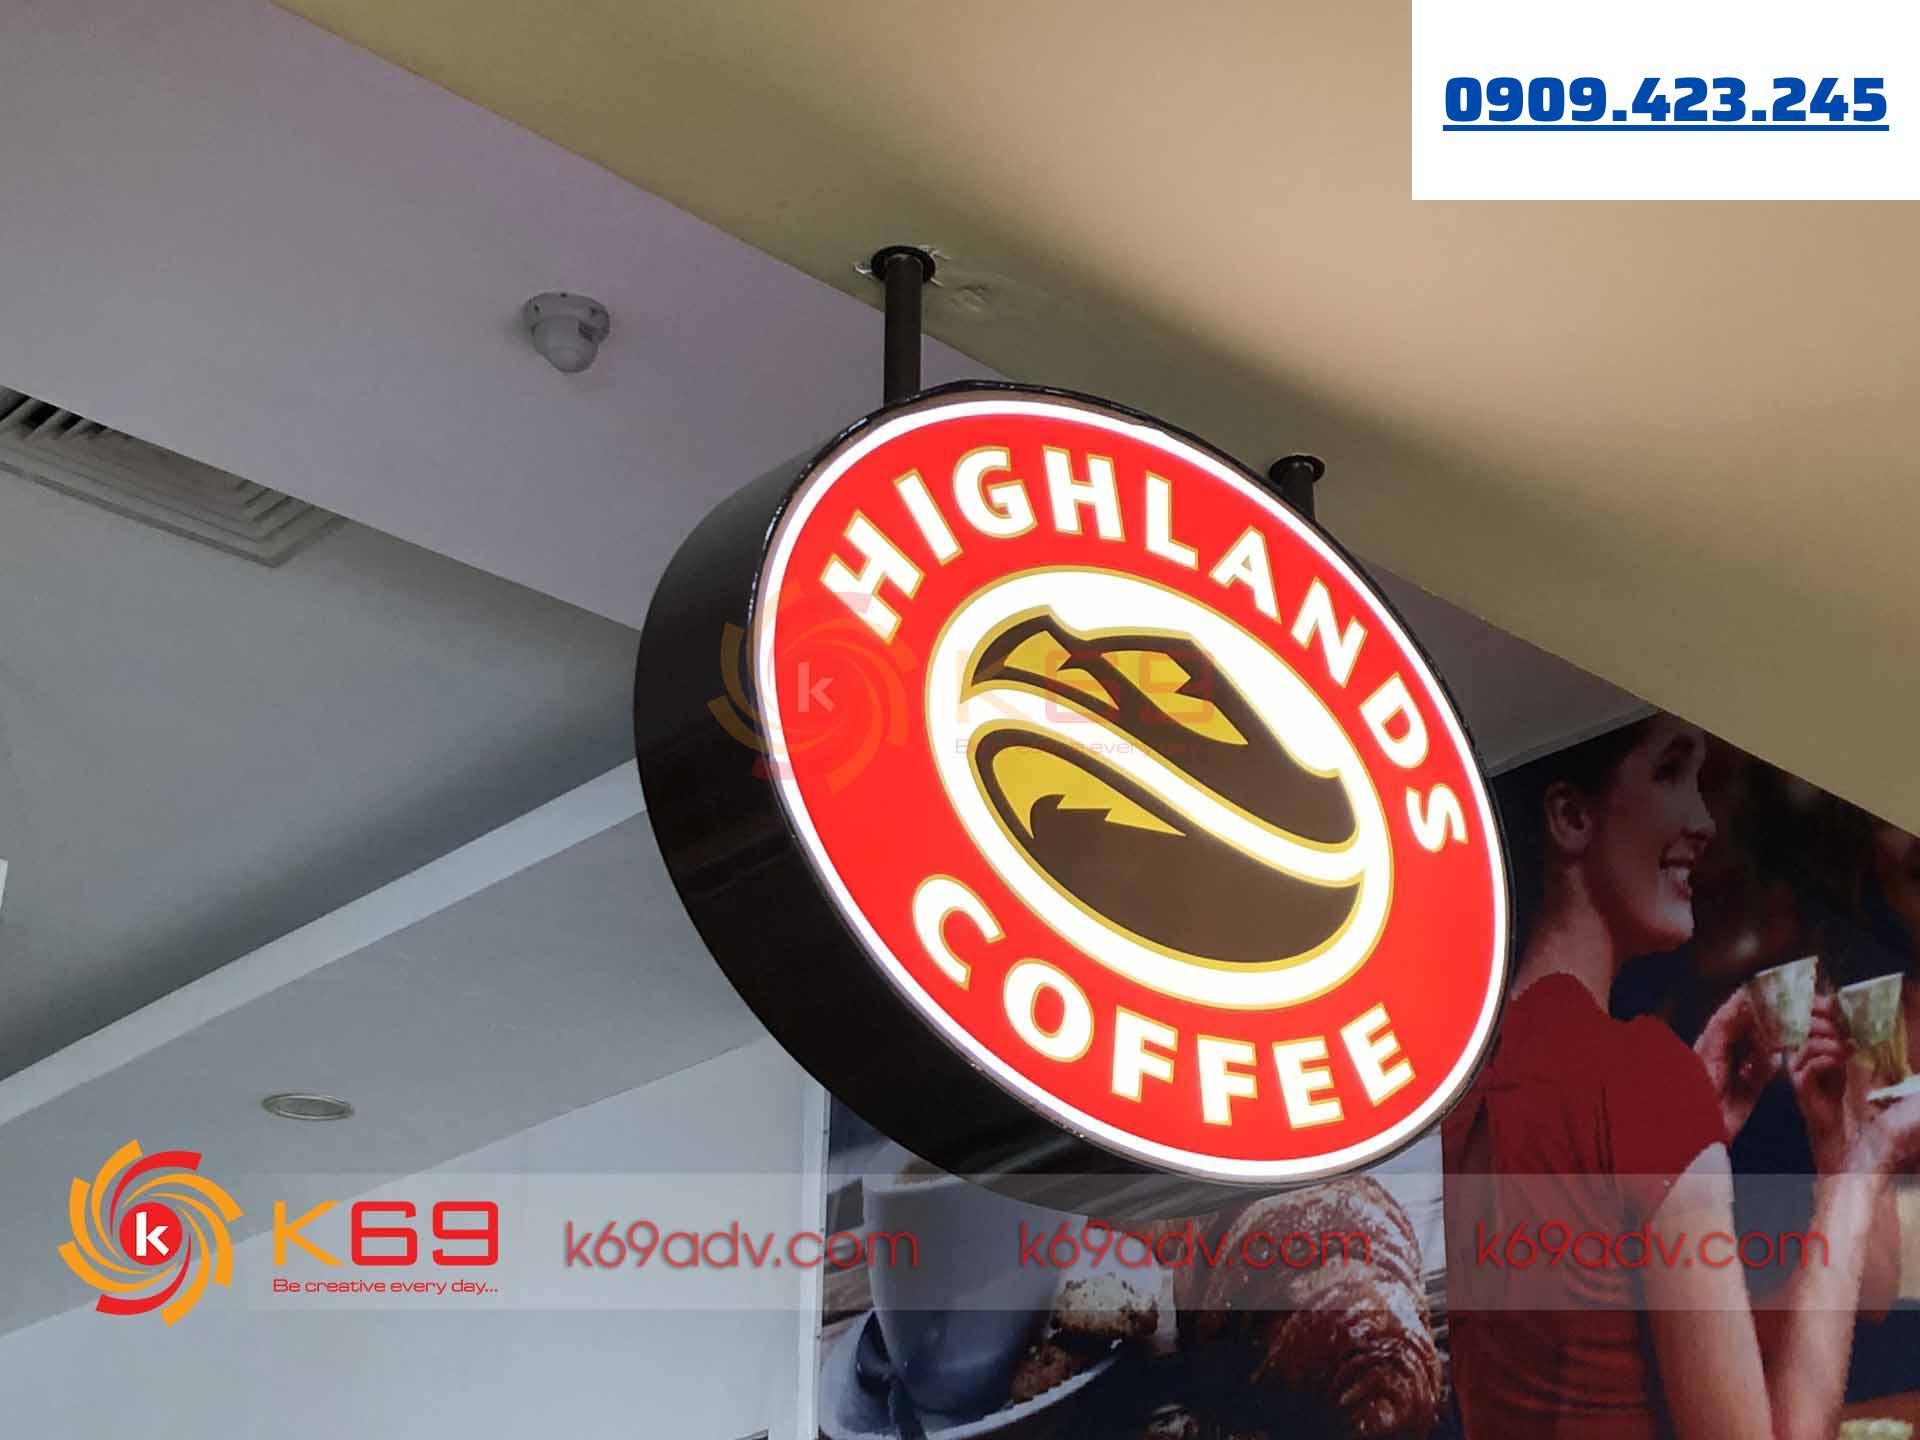 Mẫu bảng hiệu hộp đèn HighLand Coffee tại K69ADV